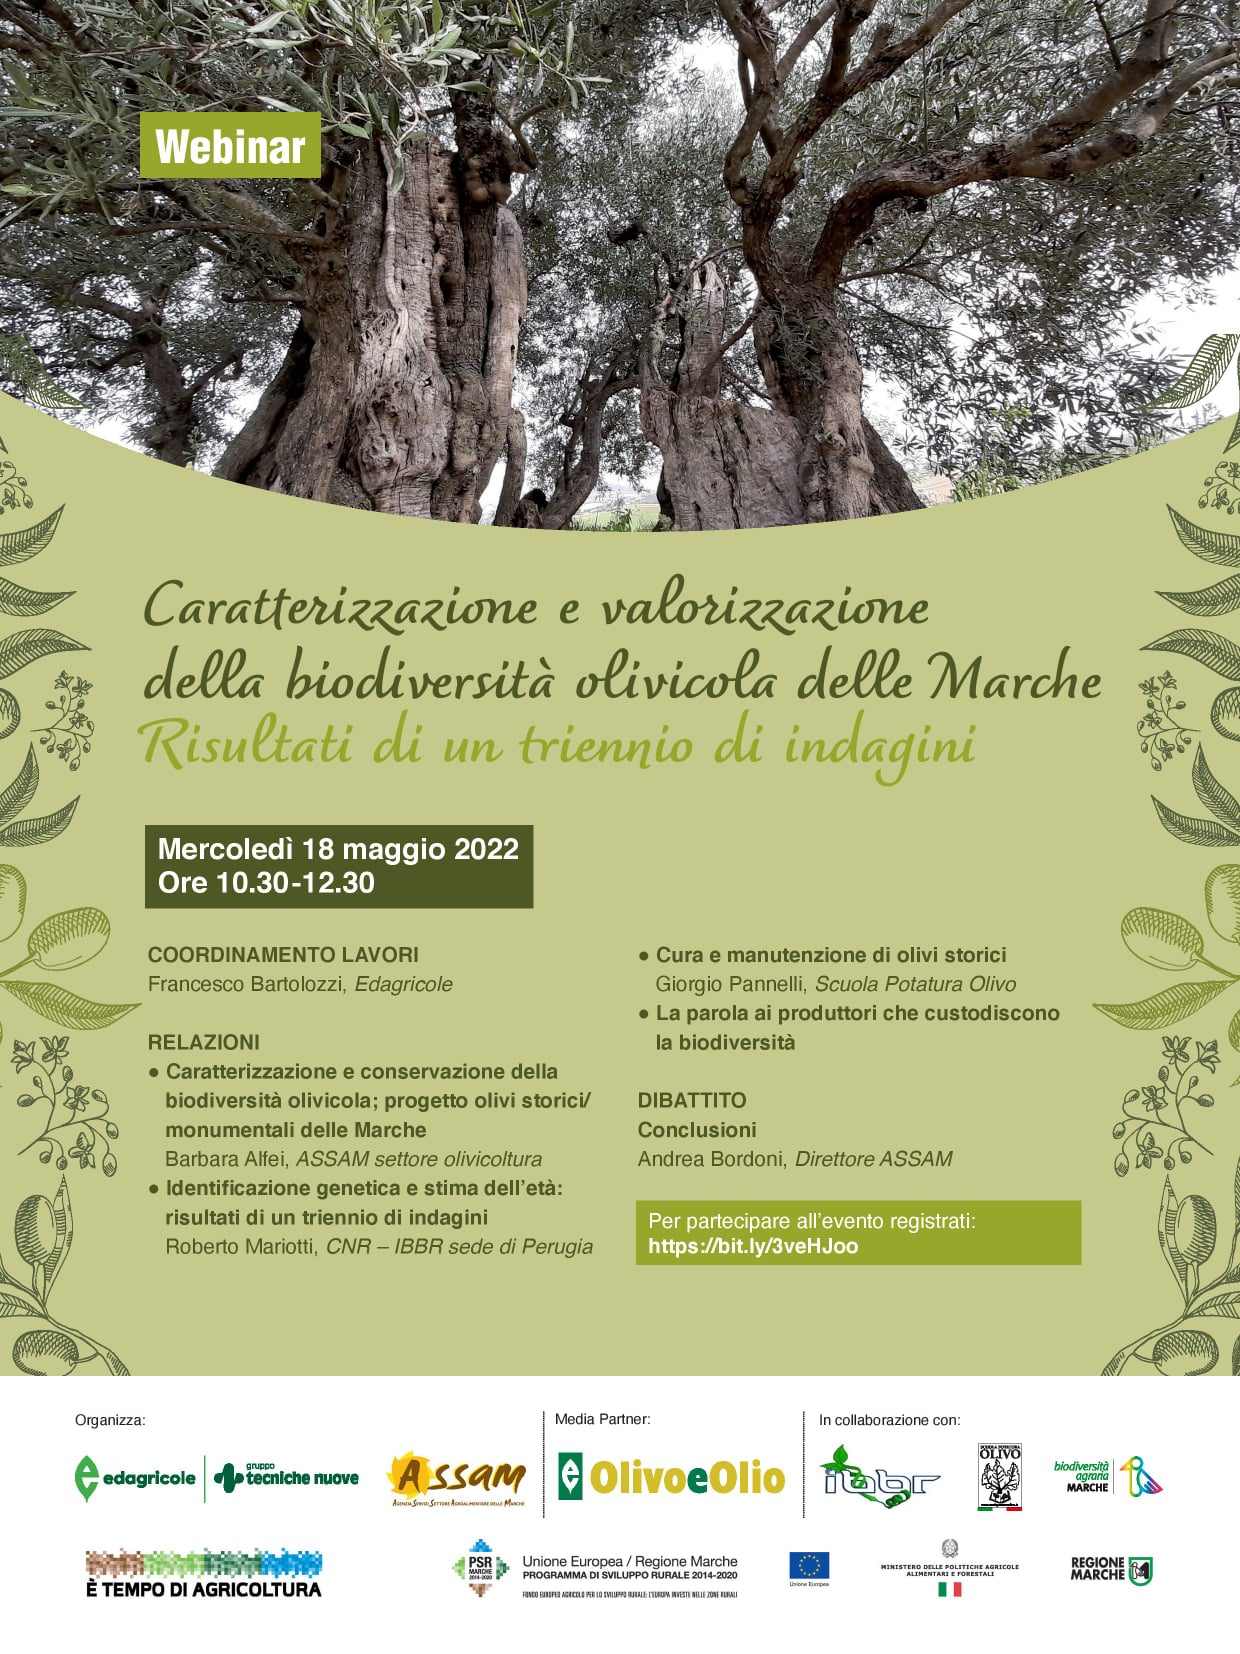 Presentati i  risultati del  progetto “Olivi monumentali delle Marche” in occasione del webinar “Caratterizzazione e valorizzazione della biodiversità olivicola: risultati di un triennio di indagini”, il 18 maggio 2022